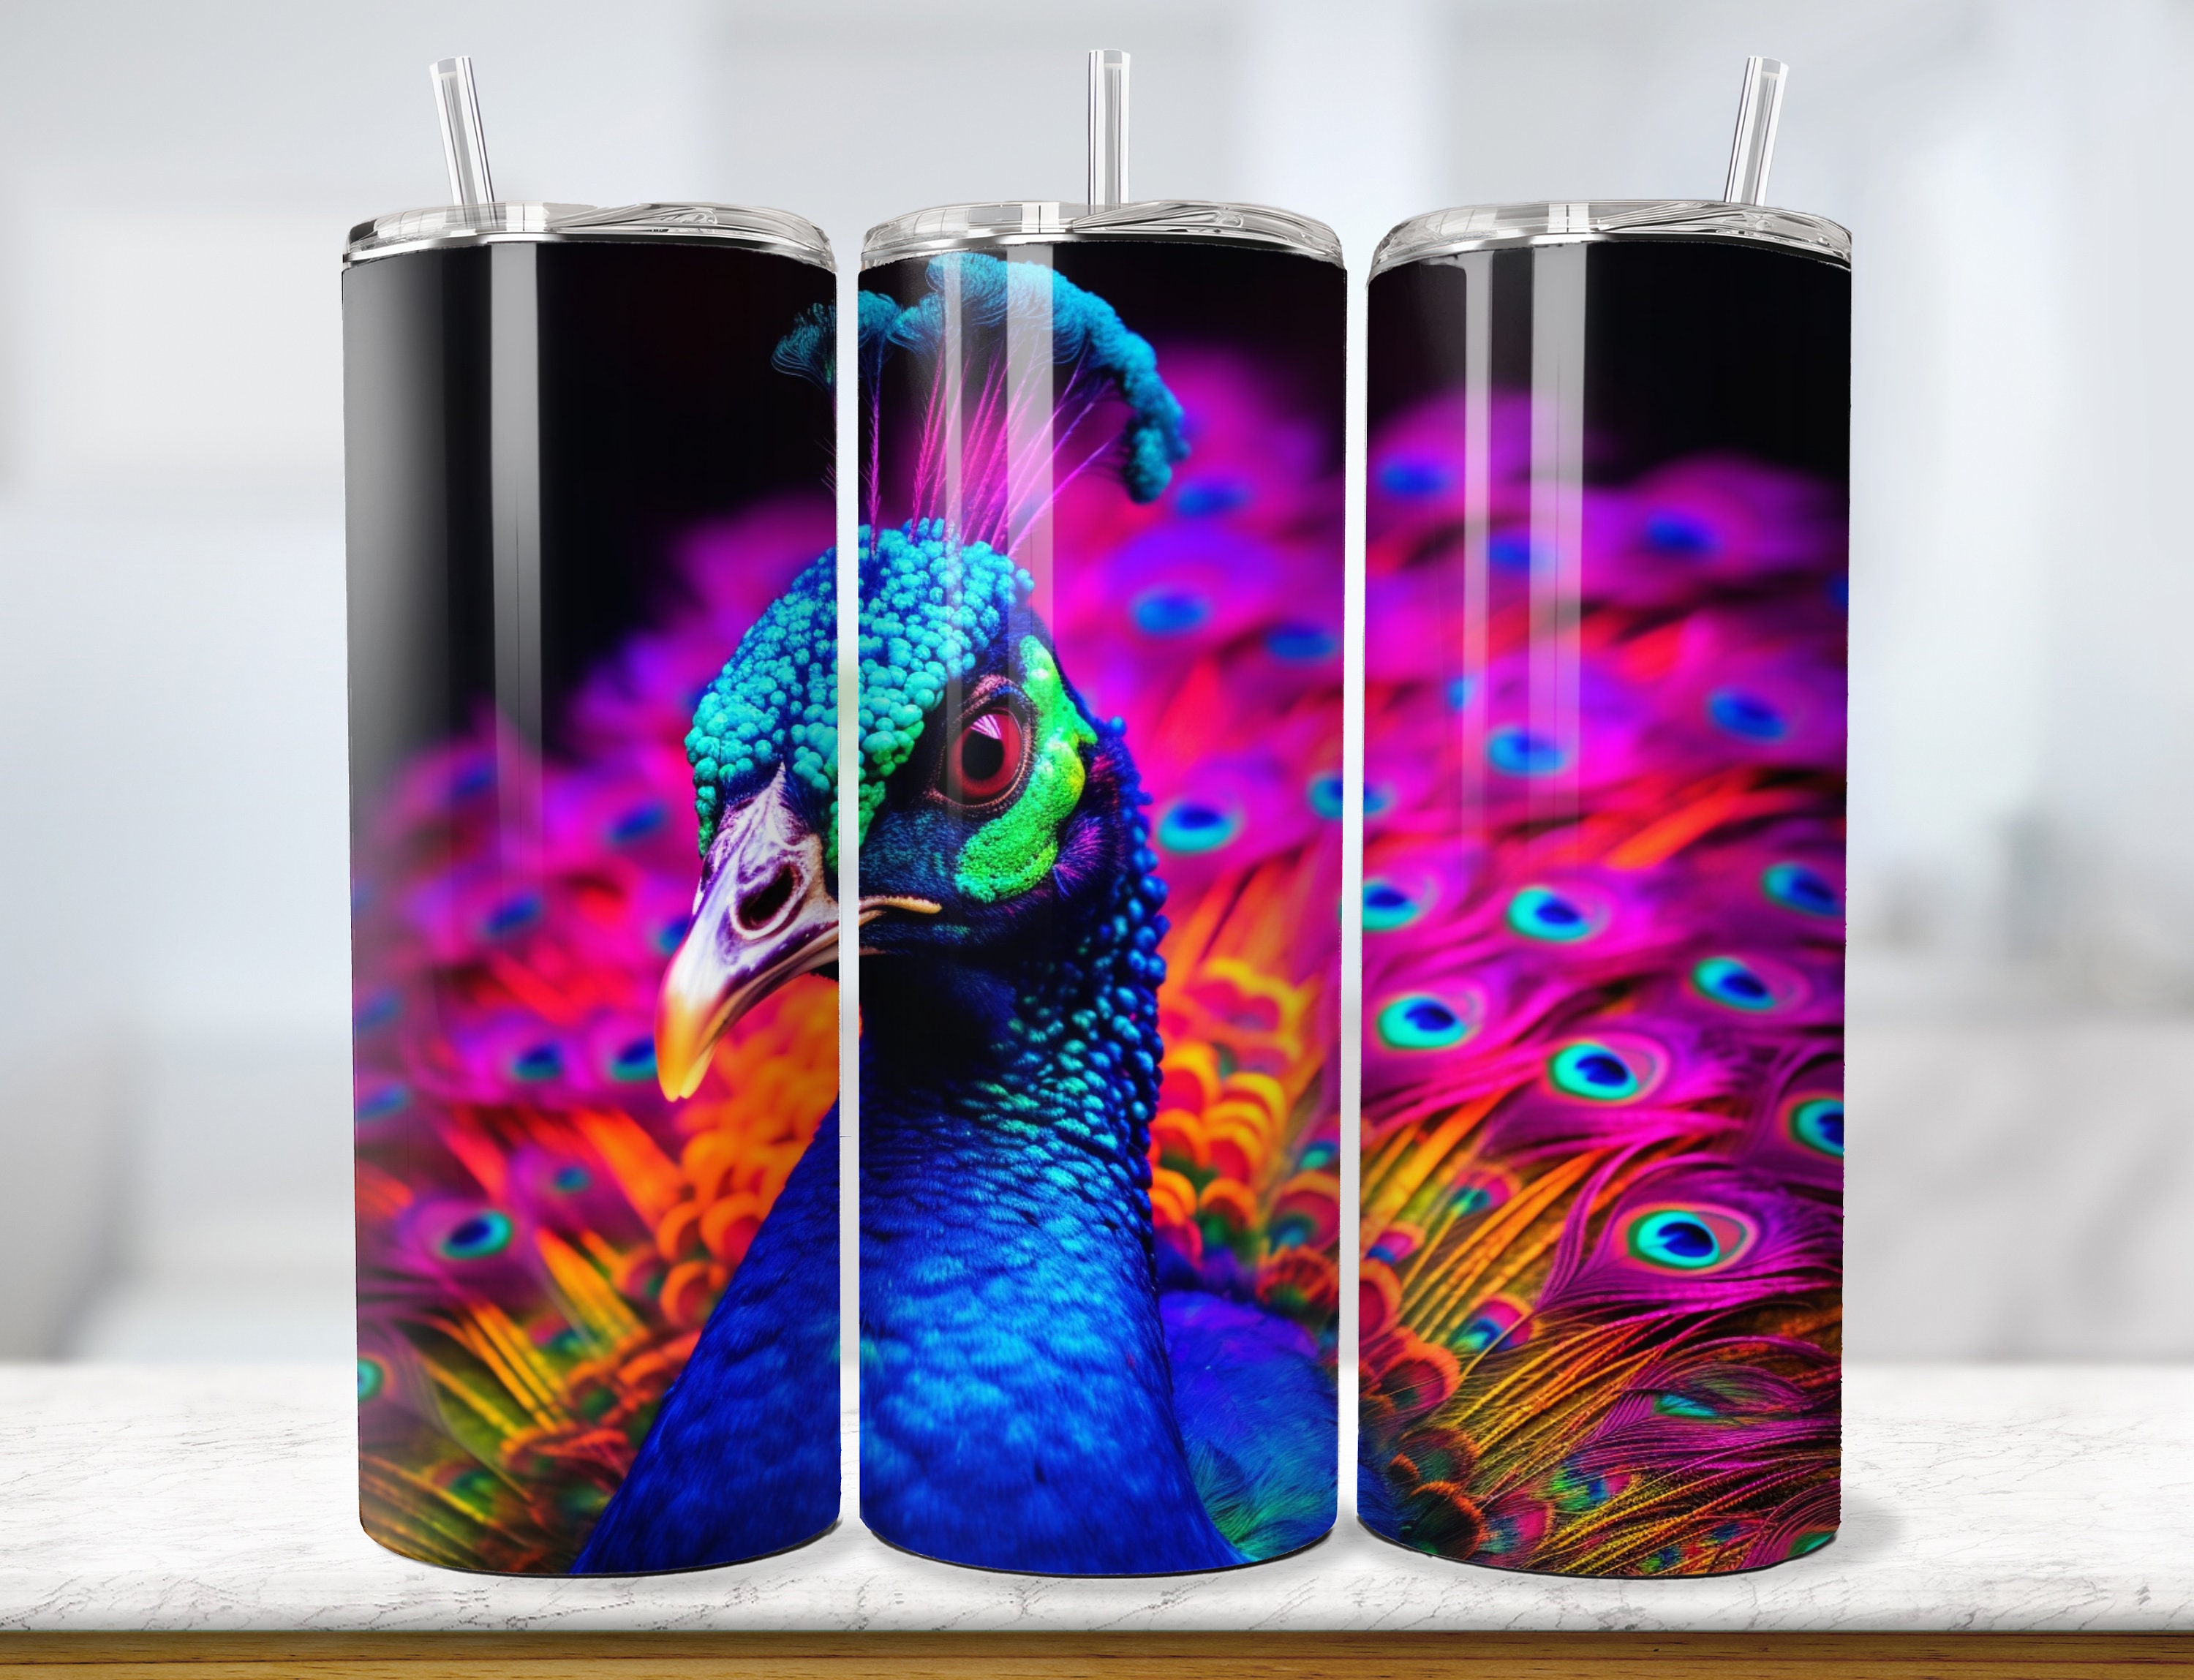 Premium AI Image  Beautiful paper quilling art peacock animal design  illustration AI Generated image